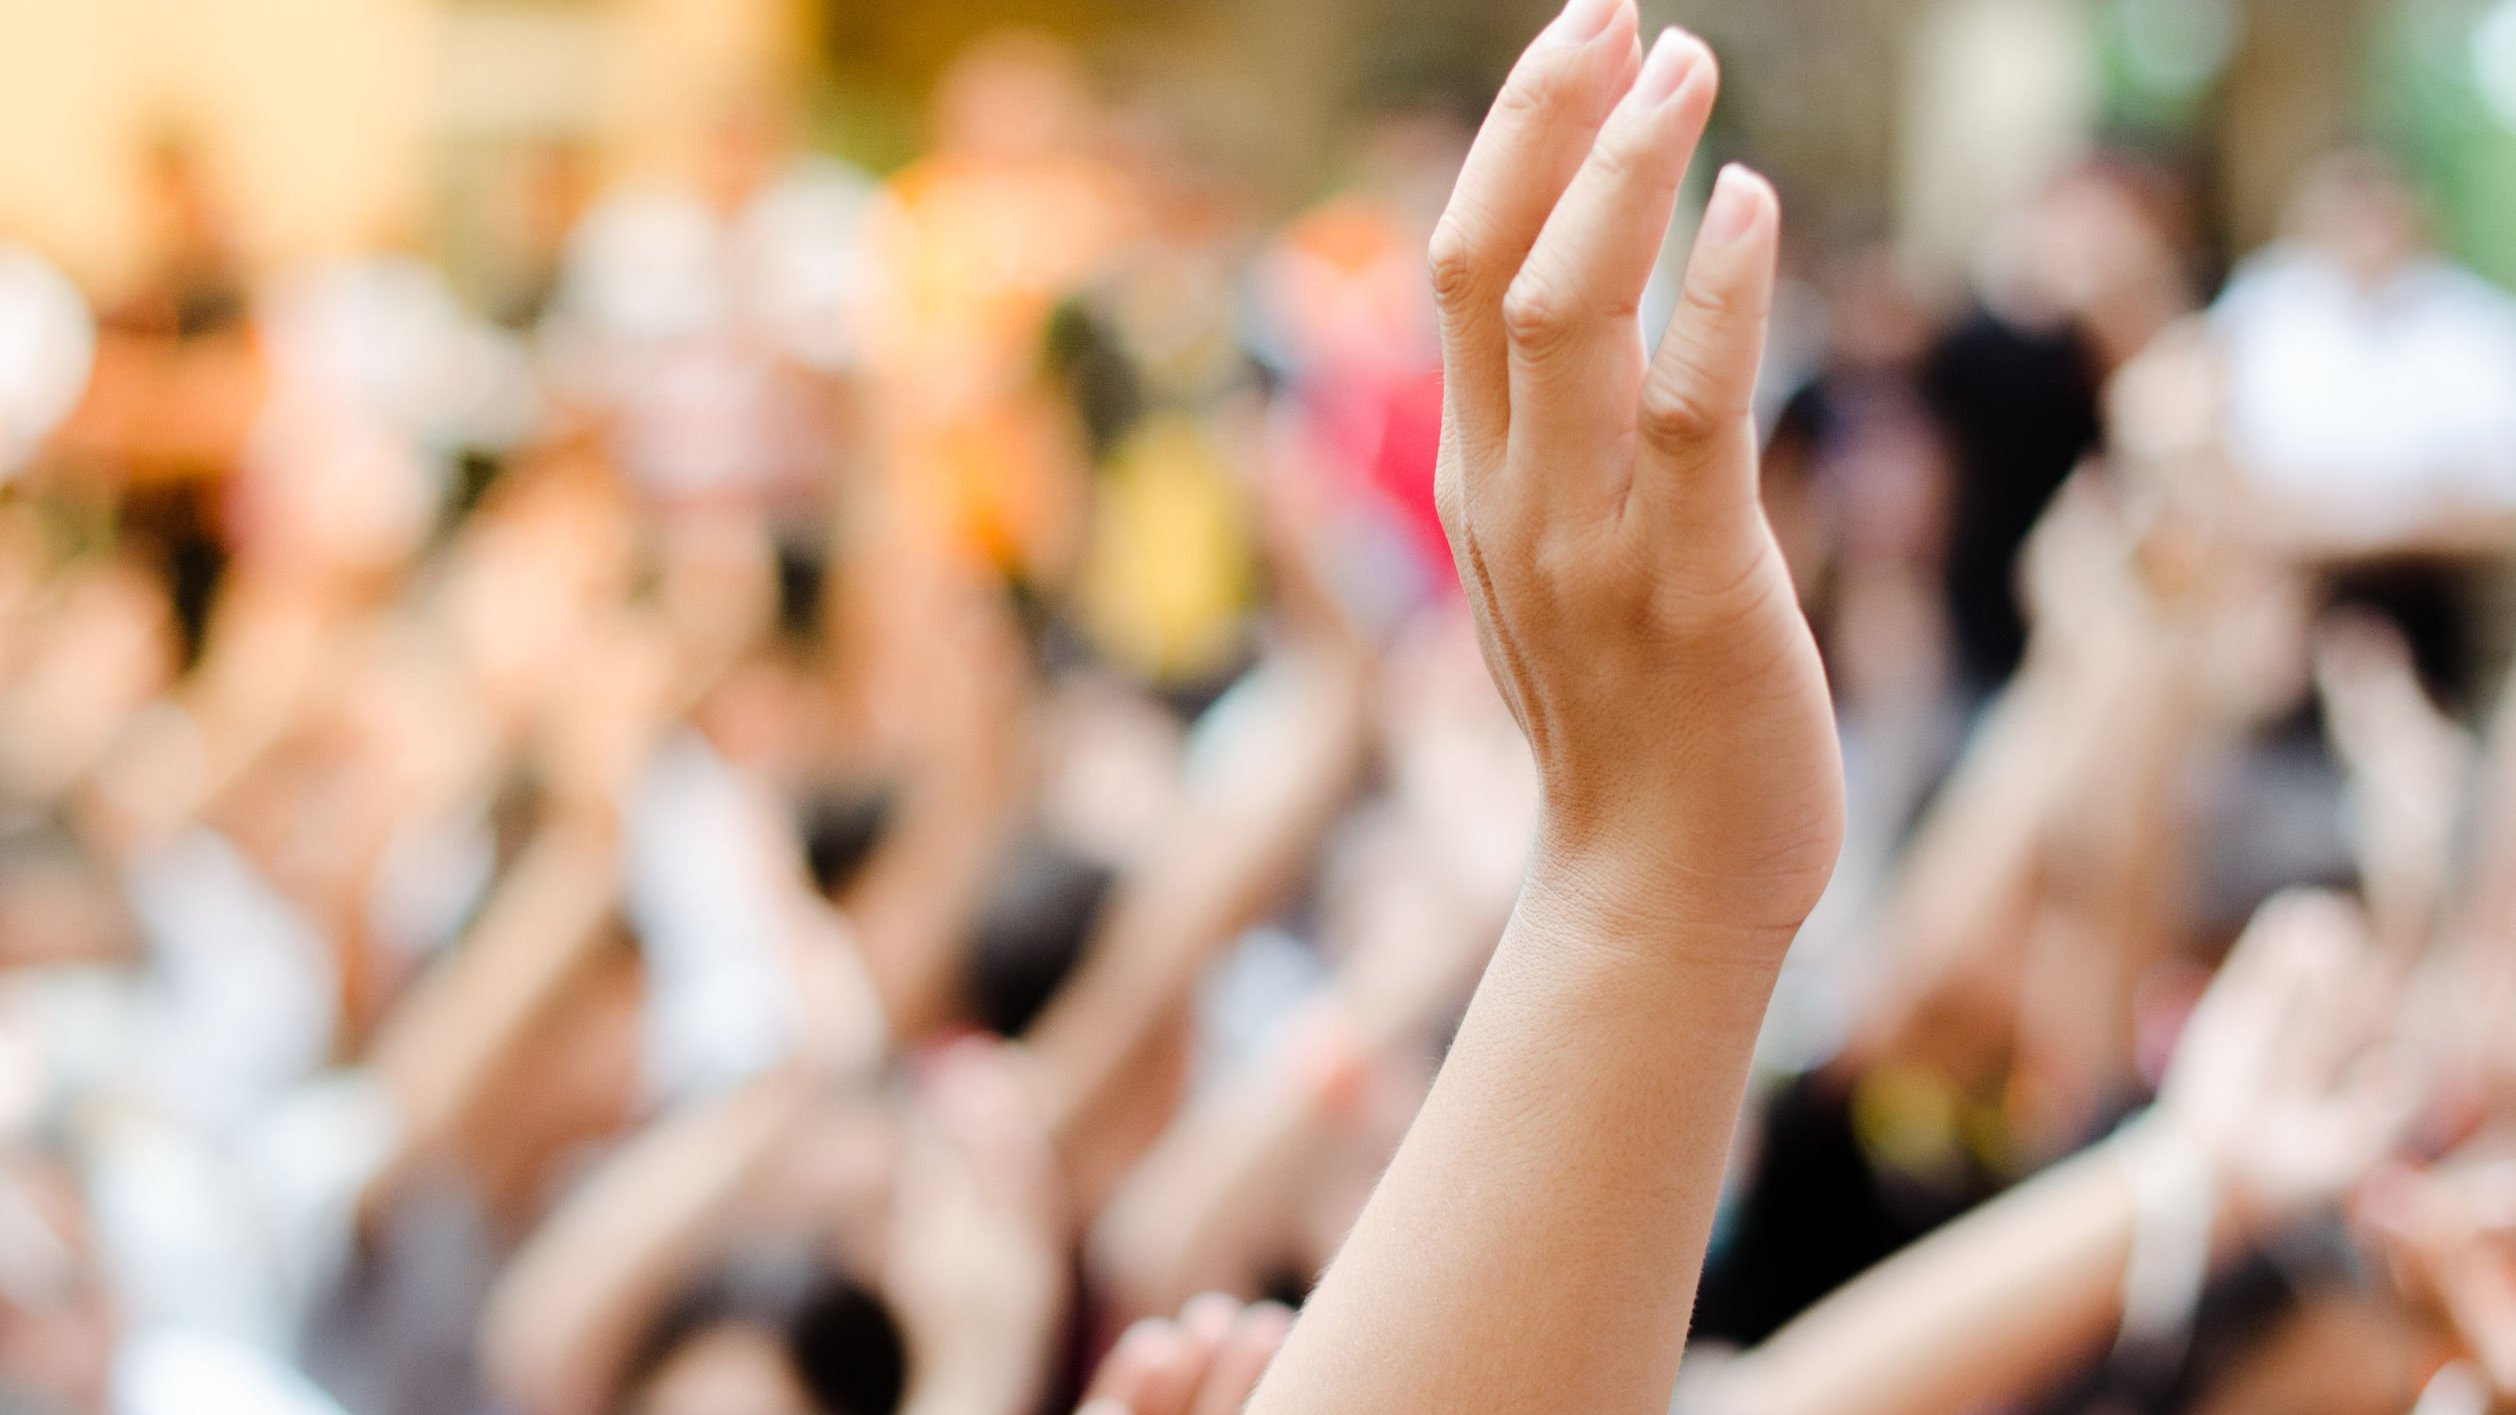 Pessoa levanta sua mão em meio a uma multidão, como forma de demonstrar participação